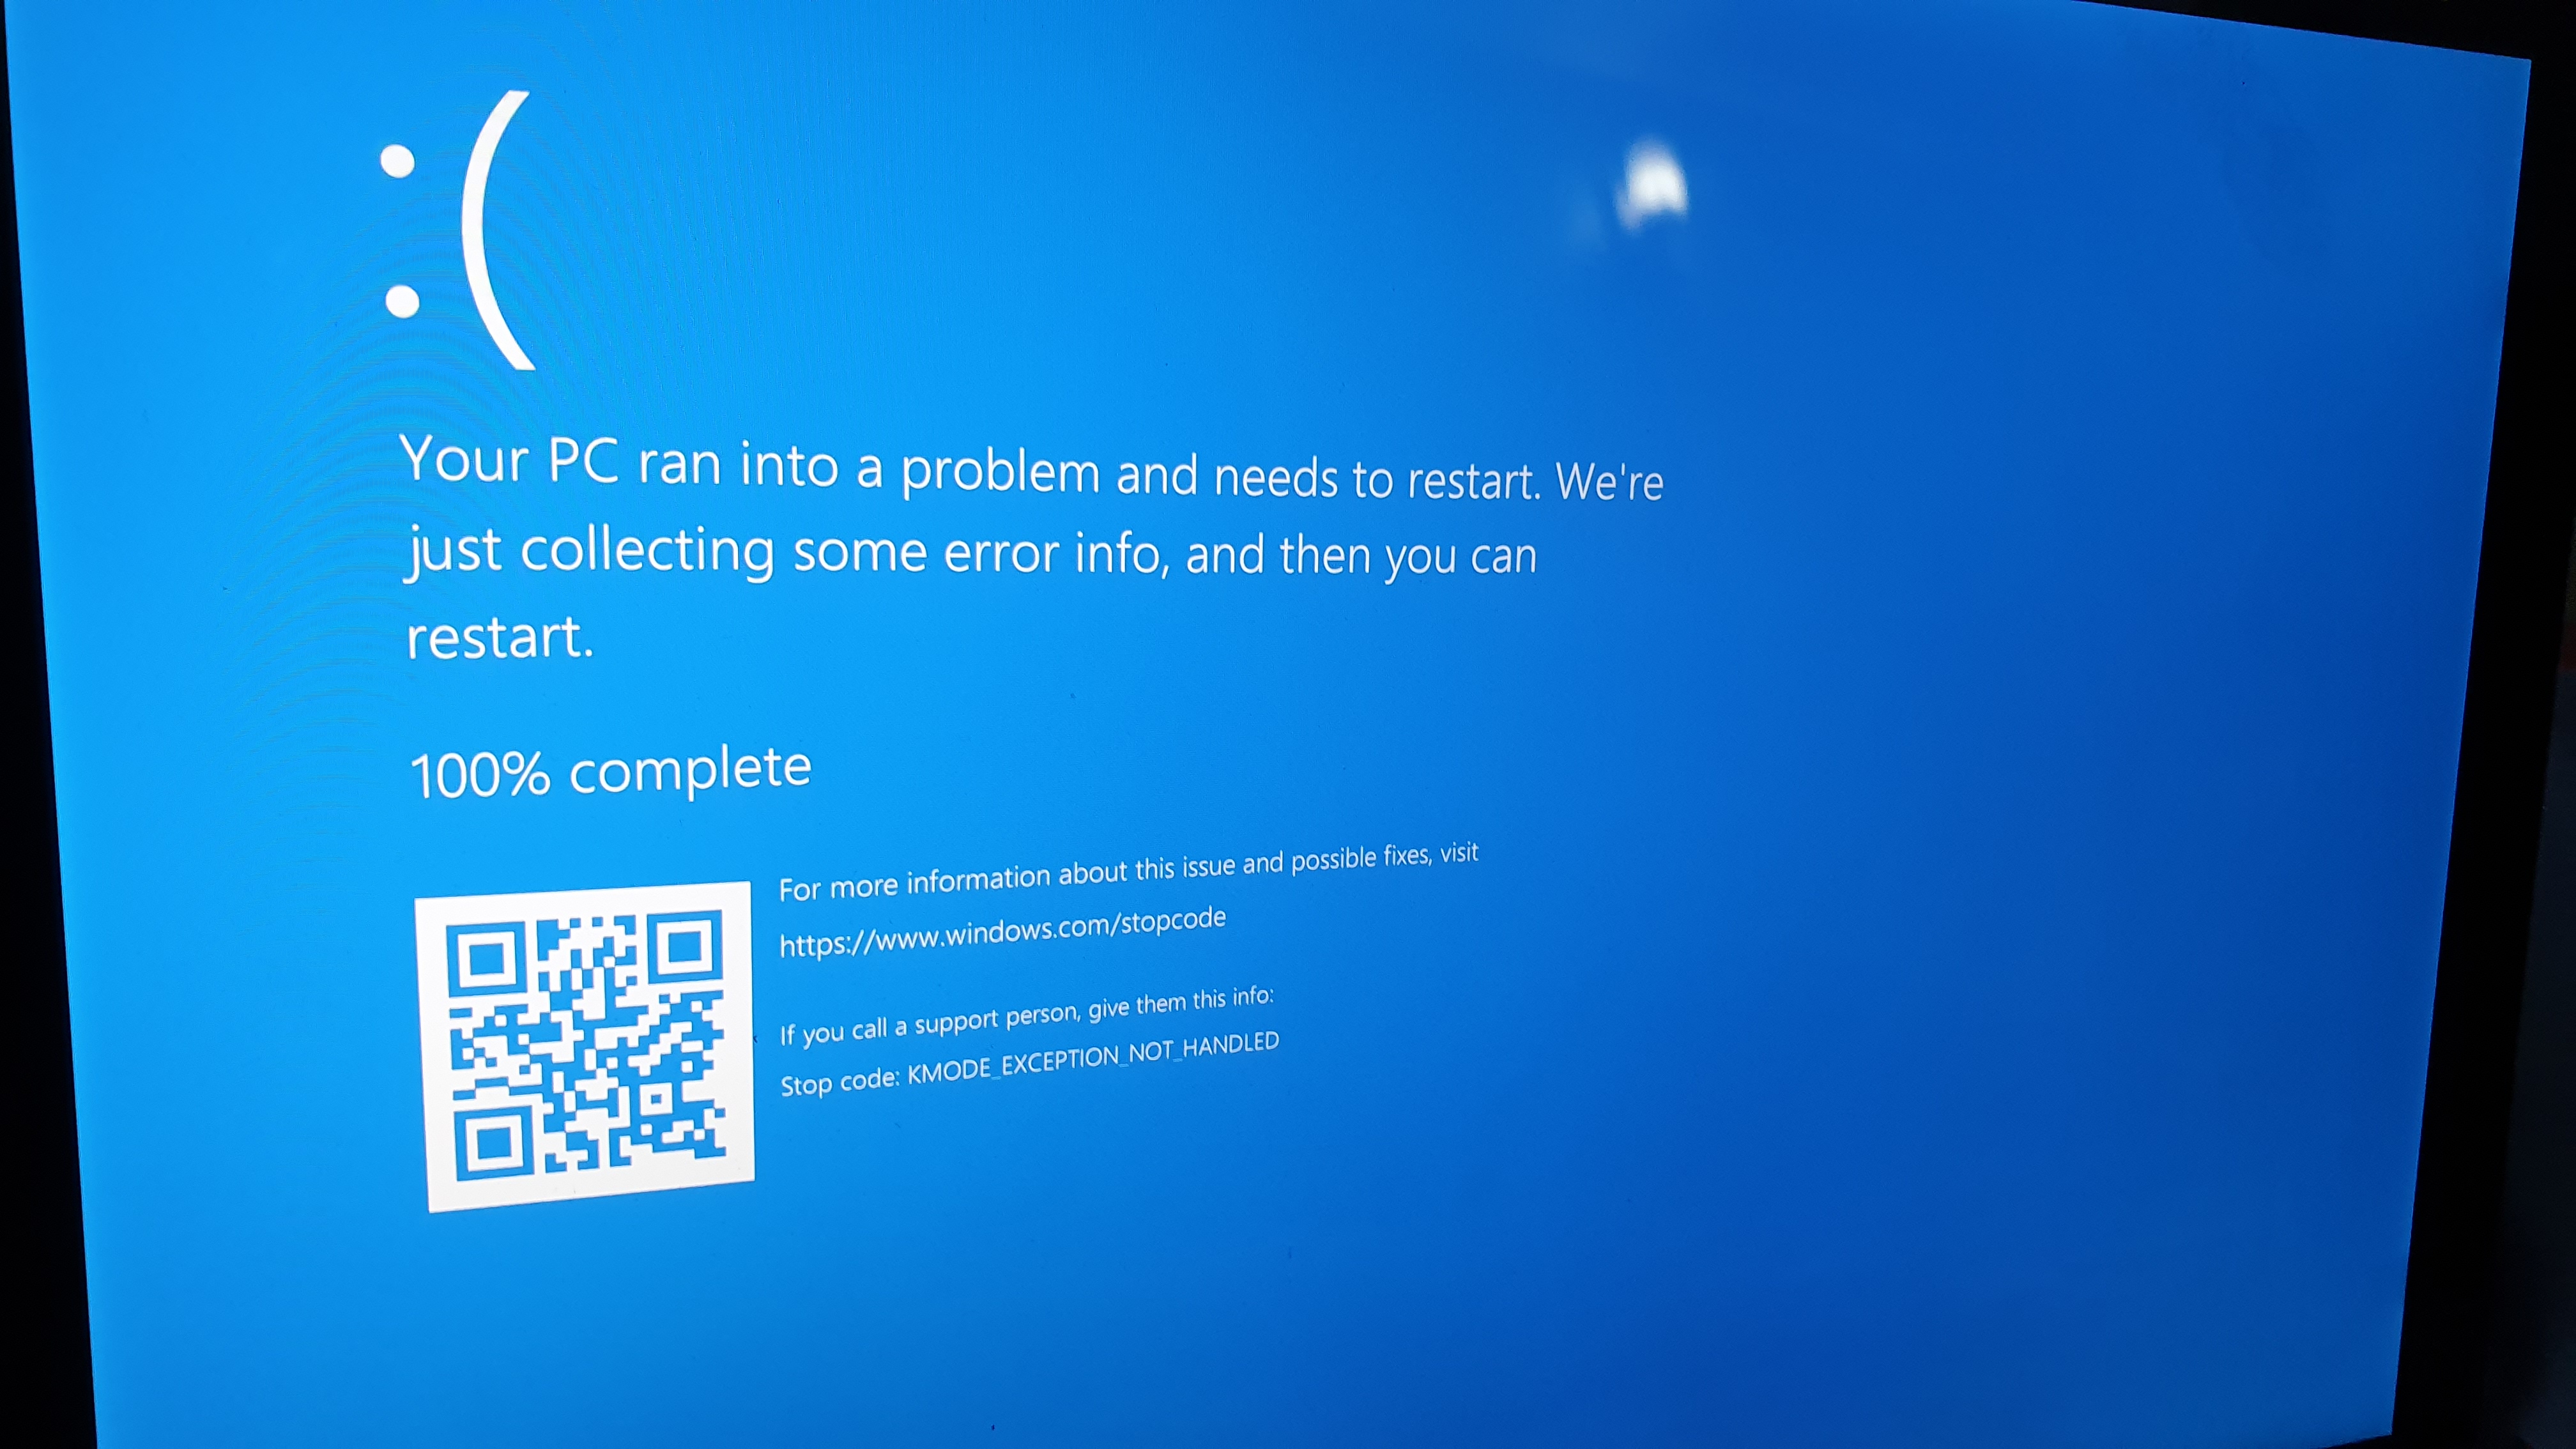 Windows 10 on Surface Pro 7 keeps crashing. - Microsoft Community